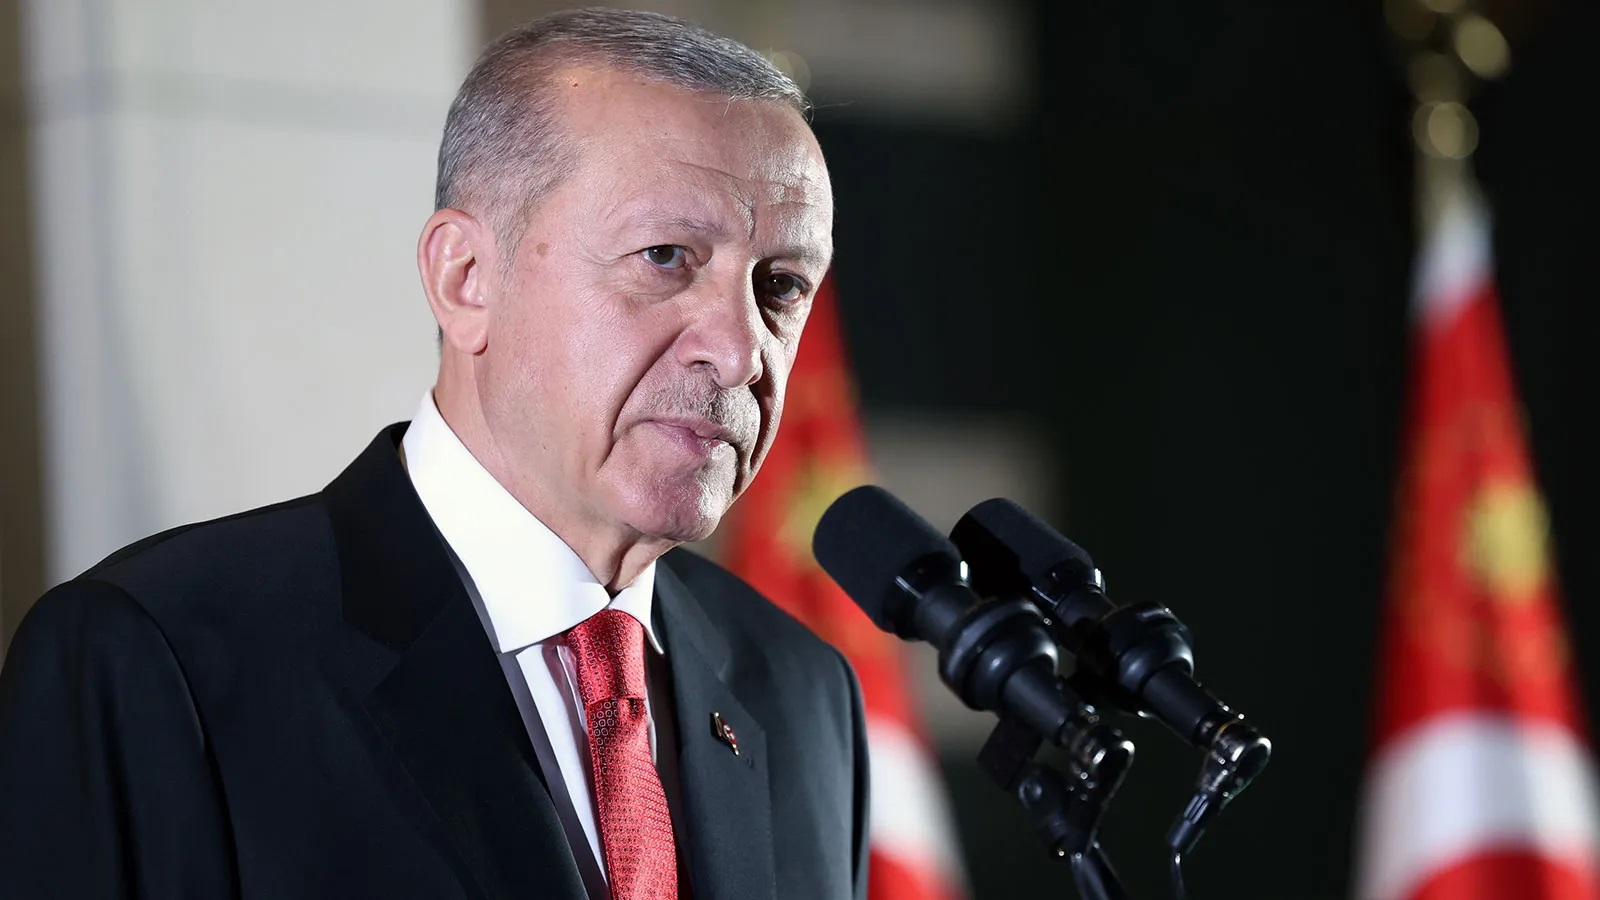 Cumhurbaşkanı Erdoğan'dan Ev Sahibi Olmak İsteyenlere Müjde! TOKİ'den 5 İlde Aylık 3.500 TL Taksitle 2 Bin 134 Konut Satışı